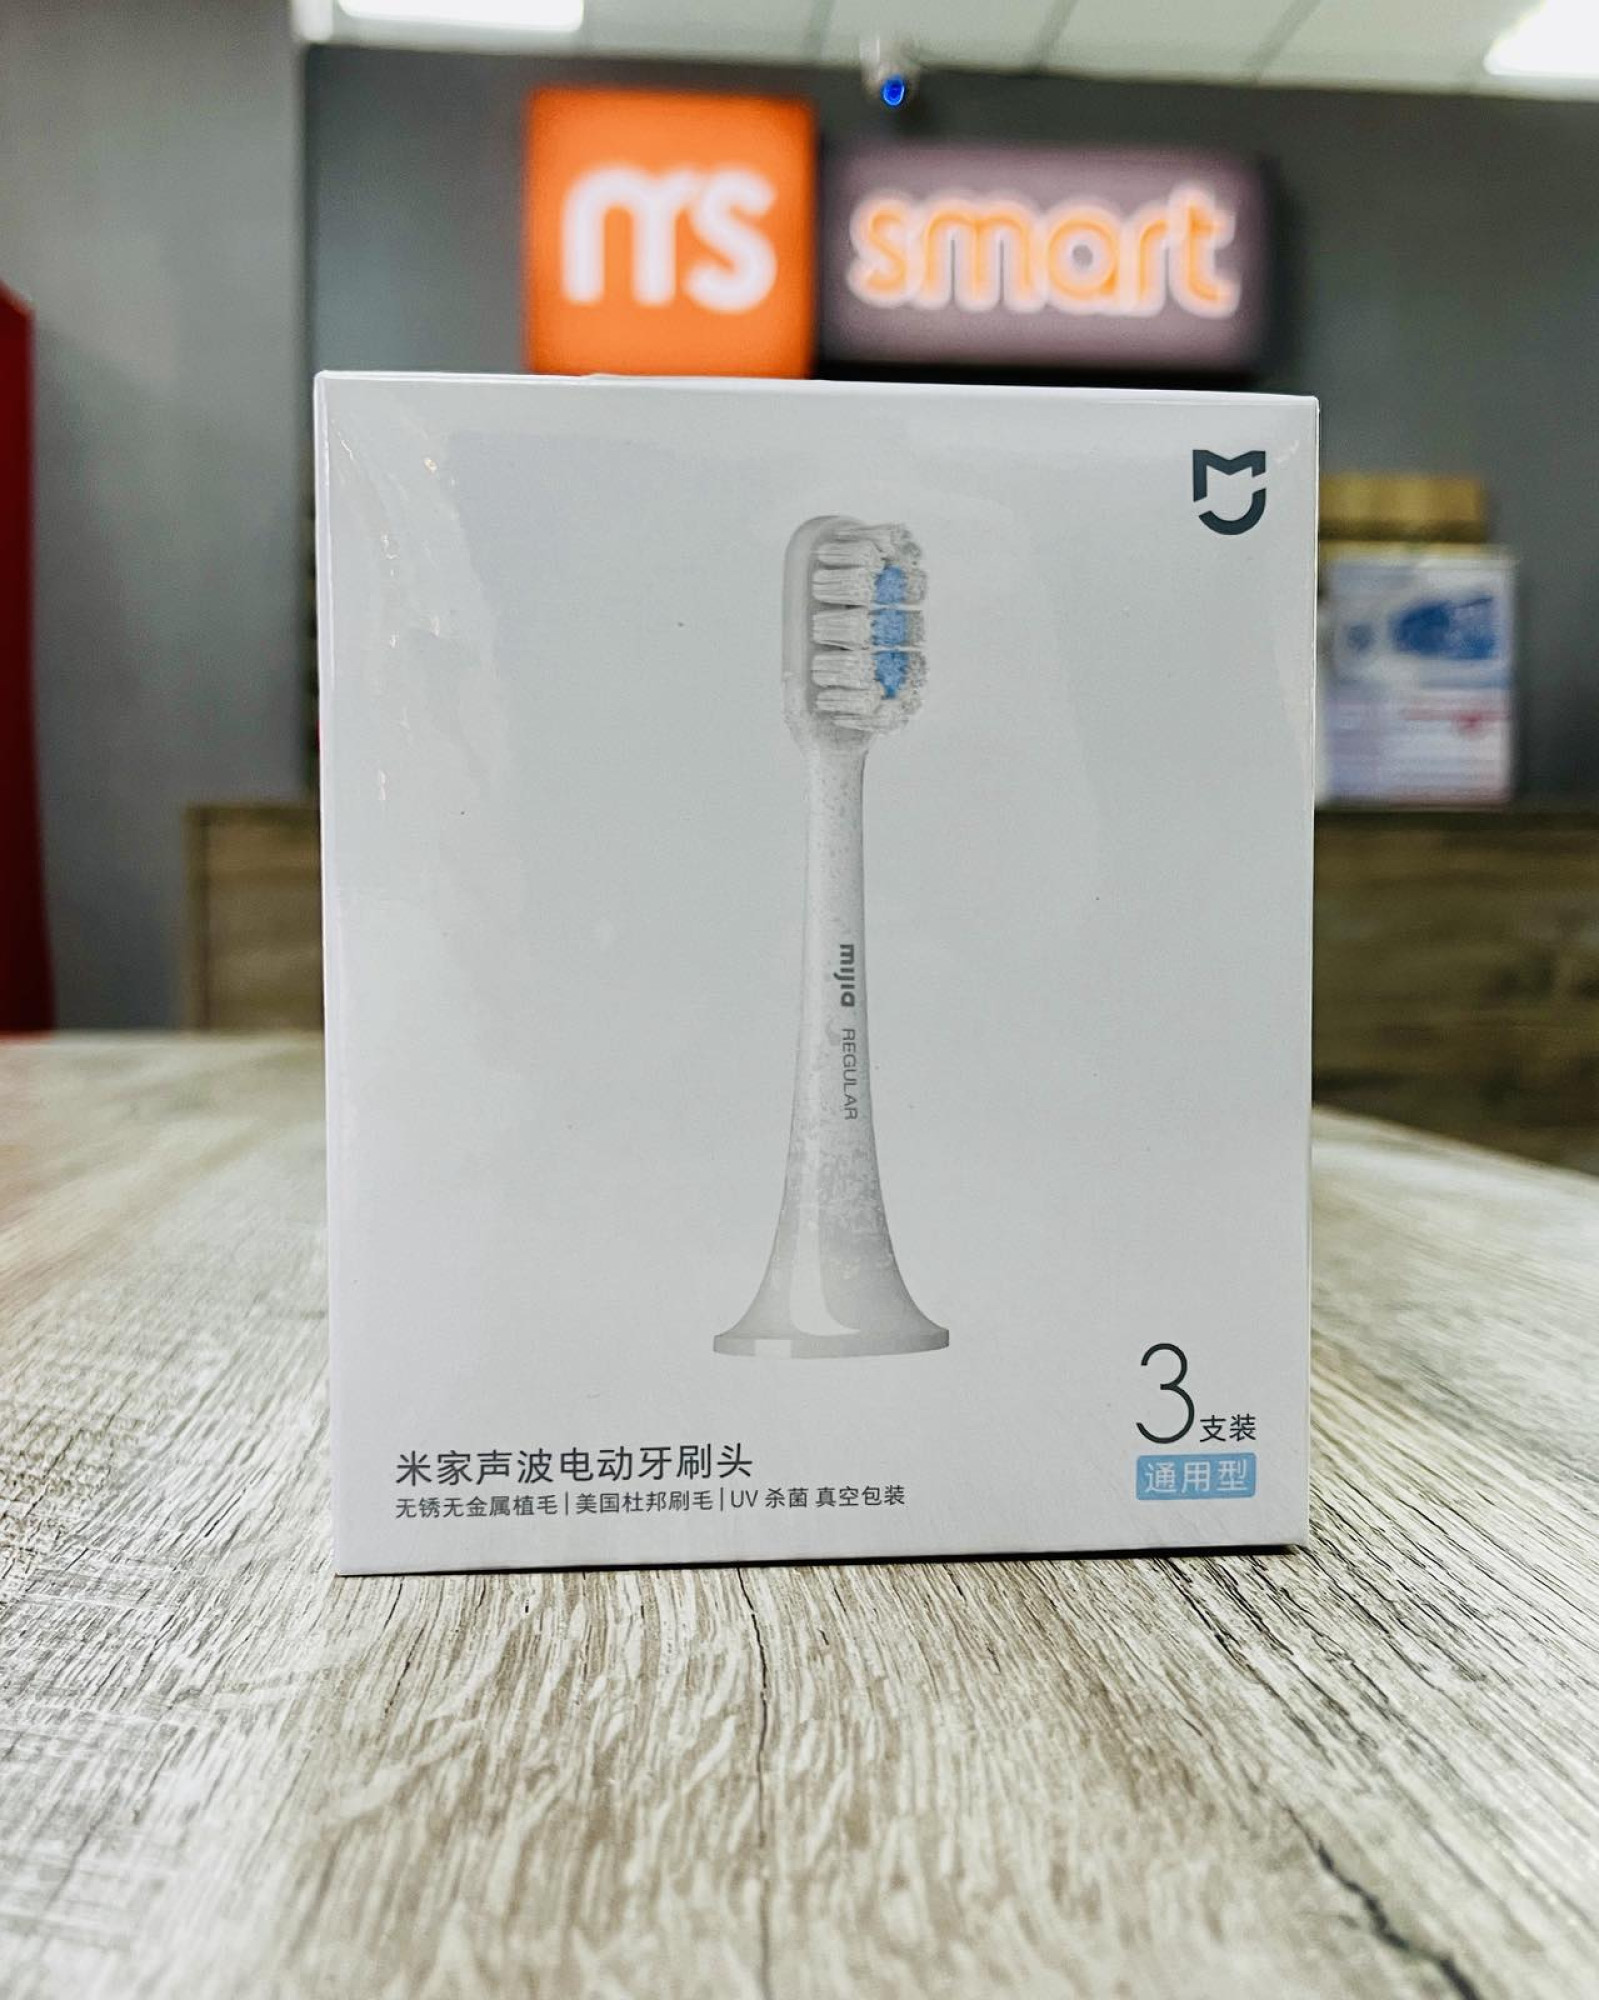 Сменные насадки для зубной щетки Xiaomi Mi Electric Tothbrush T300 T500 Blue (3шт)